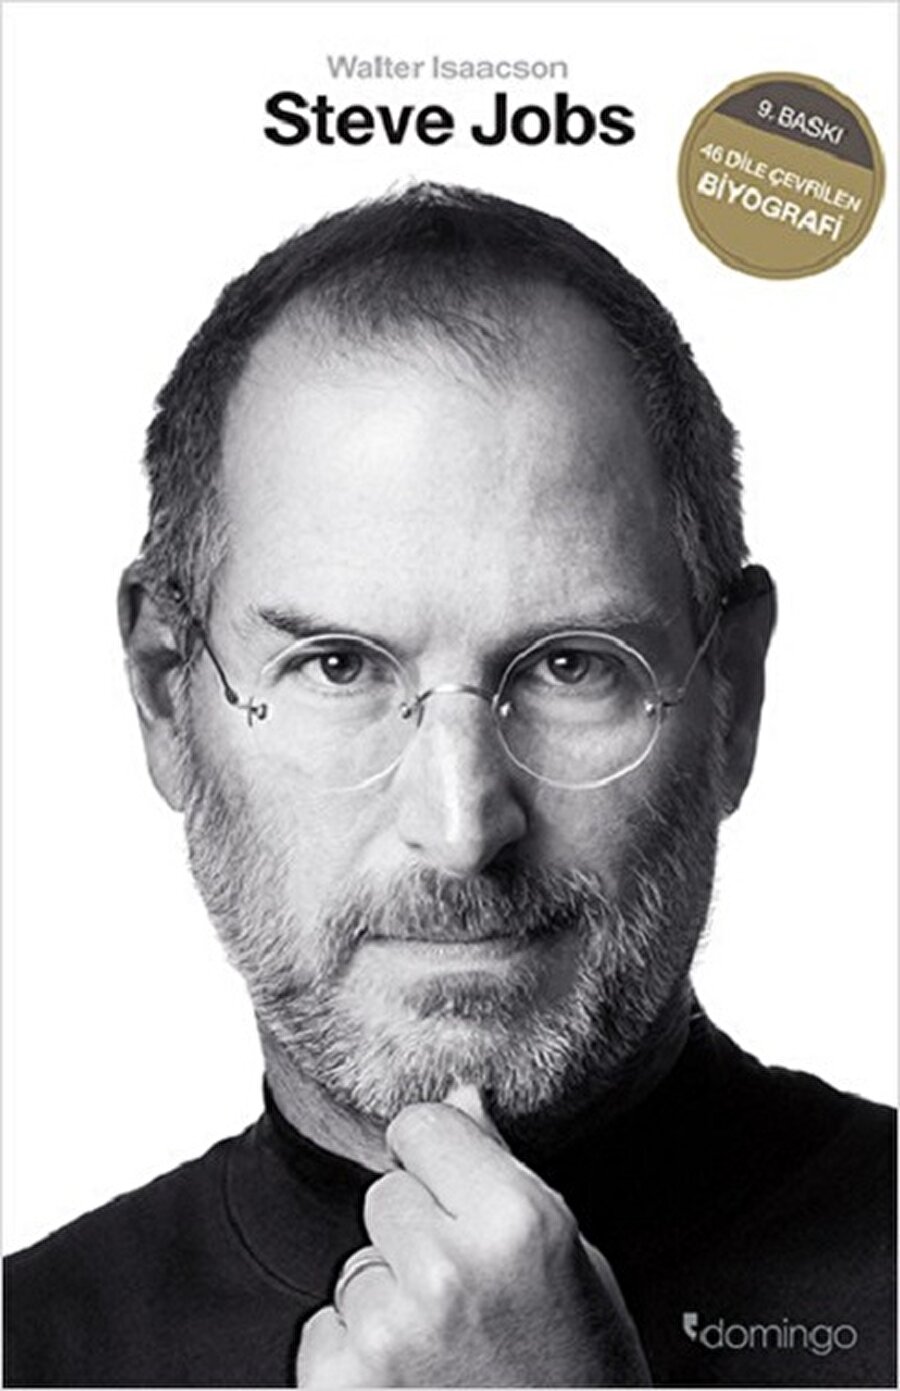 Steve Jobs Biyografisi
Yazar : Walter Isaacson
Sayfa Sayısı: 540
Baskı Yılı: 2011


 Steve Jobs'la iki yıldan uzun süre boyunca yapılan kırktan fazla röportajın -ayrıca yüzden fazla akrabasıyla, arkadaşıyla, hasmıyla, rakibiyle ve iş arkadaşıyla yapılan görüşmelerin- temel alındığı bu kitap, kusursuzluk tutkusuyla ve azmiyle altı endüstride (kişisel bilgisayarlar, animasyon filmler, müzik, telefonlar, tablet bilgisayarlar ve dijital yayıncılık) çığır açmış bir girişimcinin inişli çıkışlı hayatını ve güçlü kişiliğini anlatıyor. Jobs bu kitabın yazılma sürecinde işbirliğinde bulunsa da, yazılanlar üstünde söz sahibi olmayı ve hatta kitabı yayınlanmadan önce okuma hakkını bile istemedi. Hiç sınır koymadı, tersine tanıdığı insanları dürüst konuşmaya teşvik etti. 
